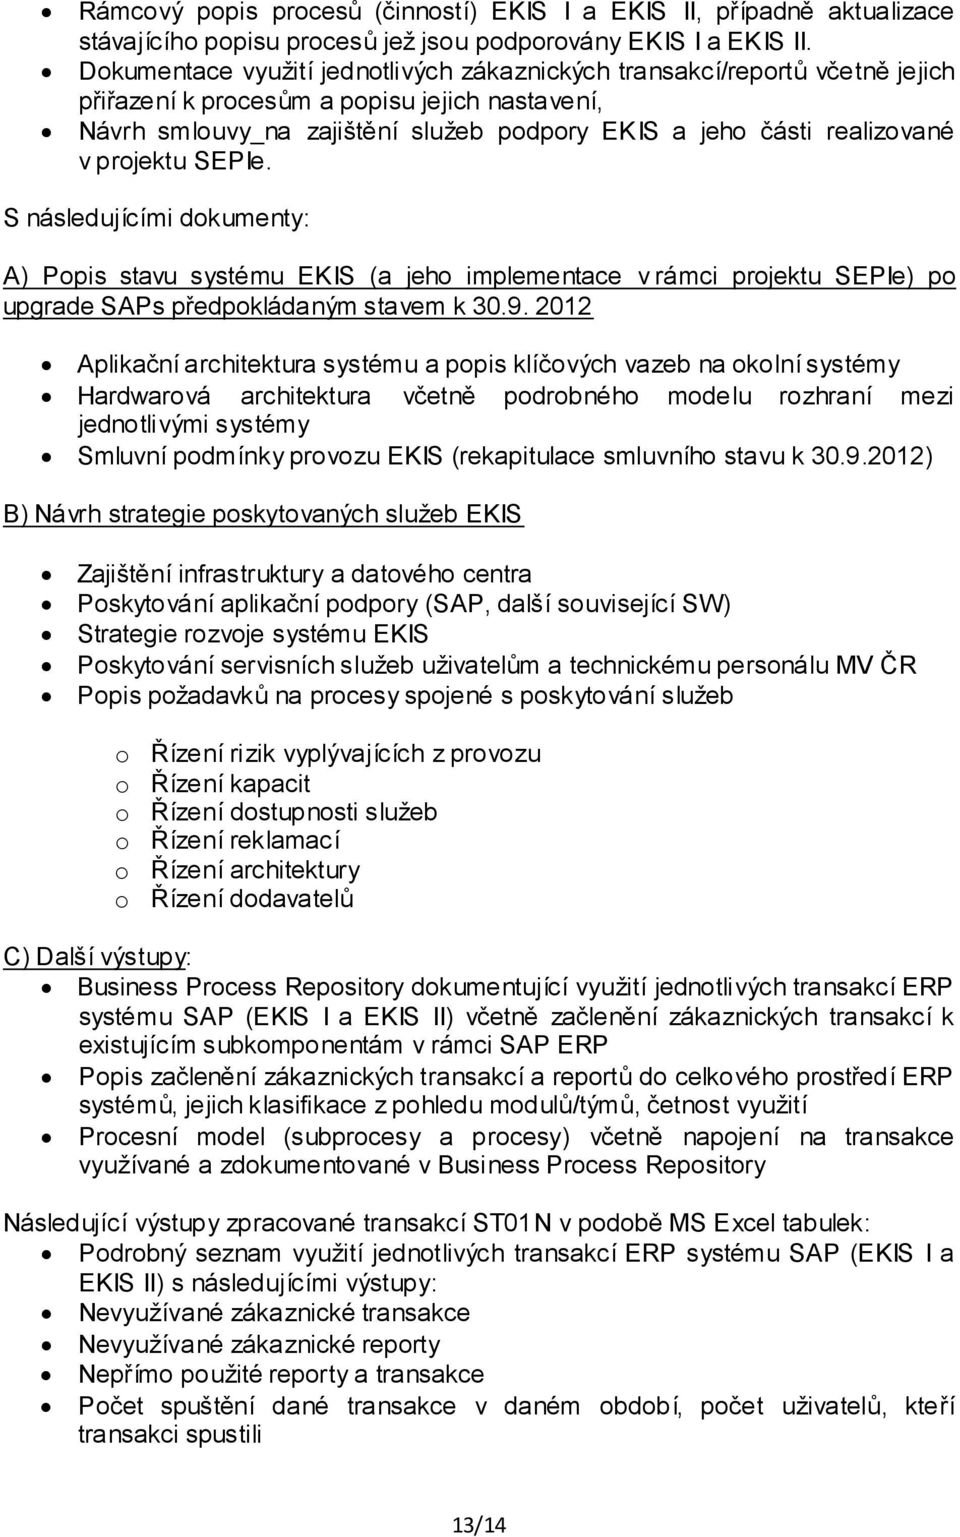 projektu SEPIe. S následujícími dokumenty: A) Popis stavu systému EKIS (a jeho implementace v rámci projektu SEPIe) po upgrade SAPs předpokládaným stavem k 30.9.